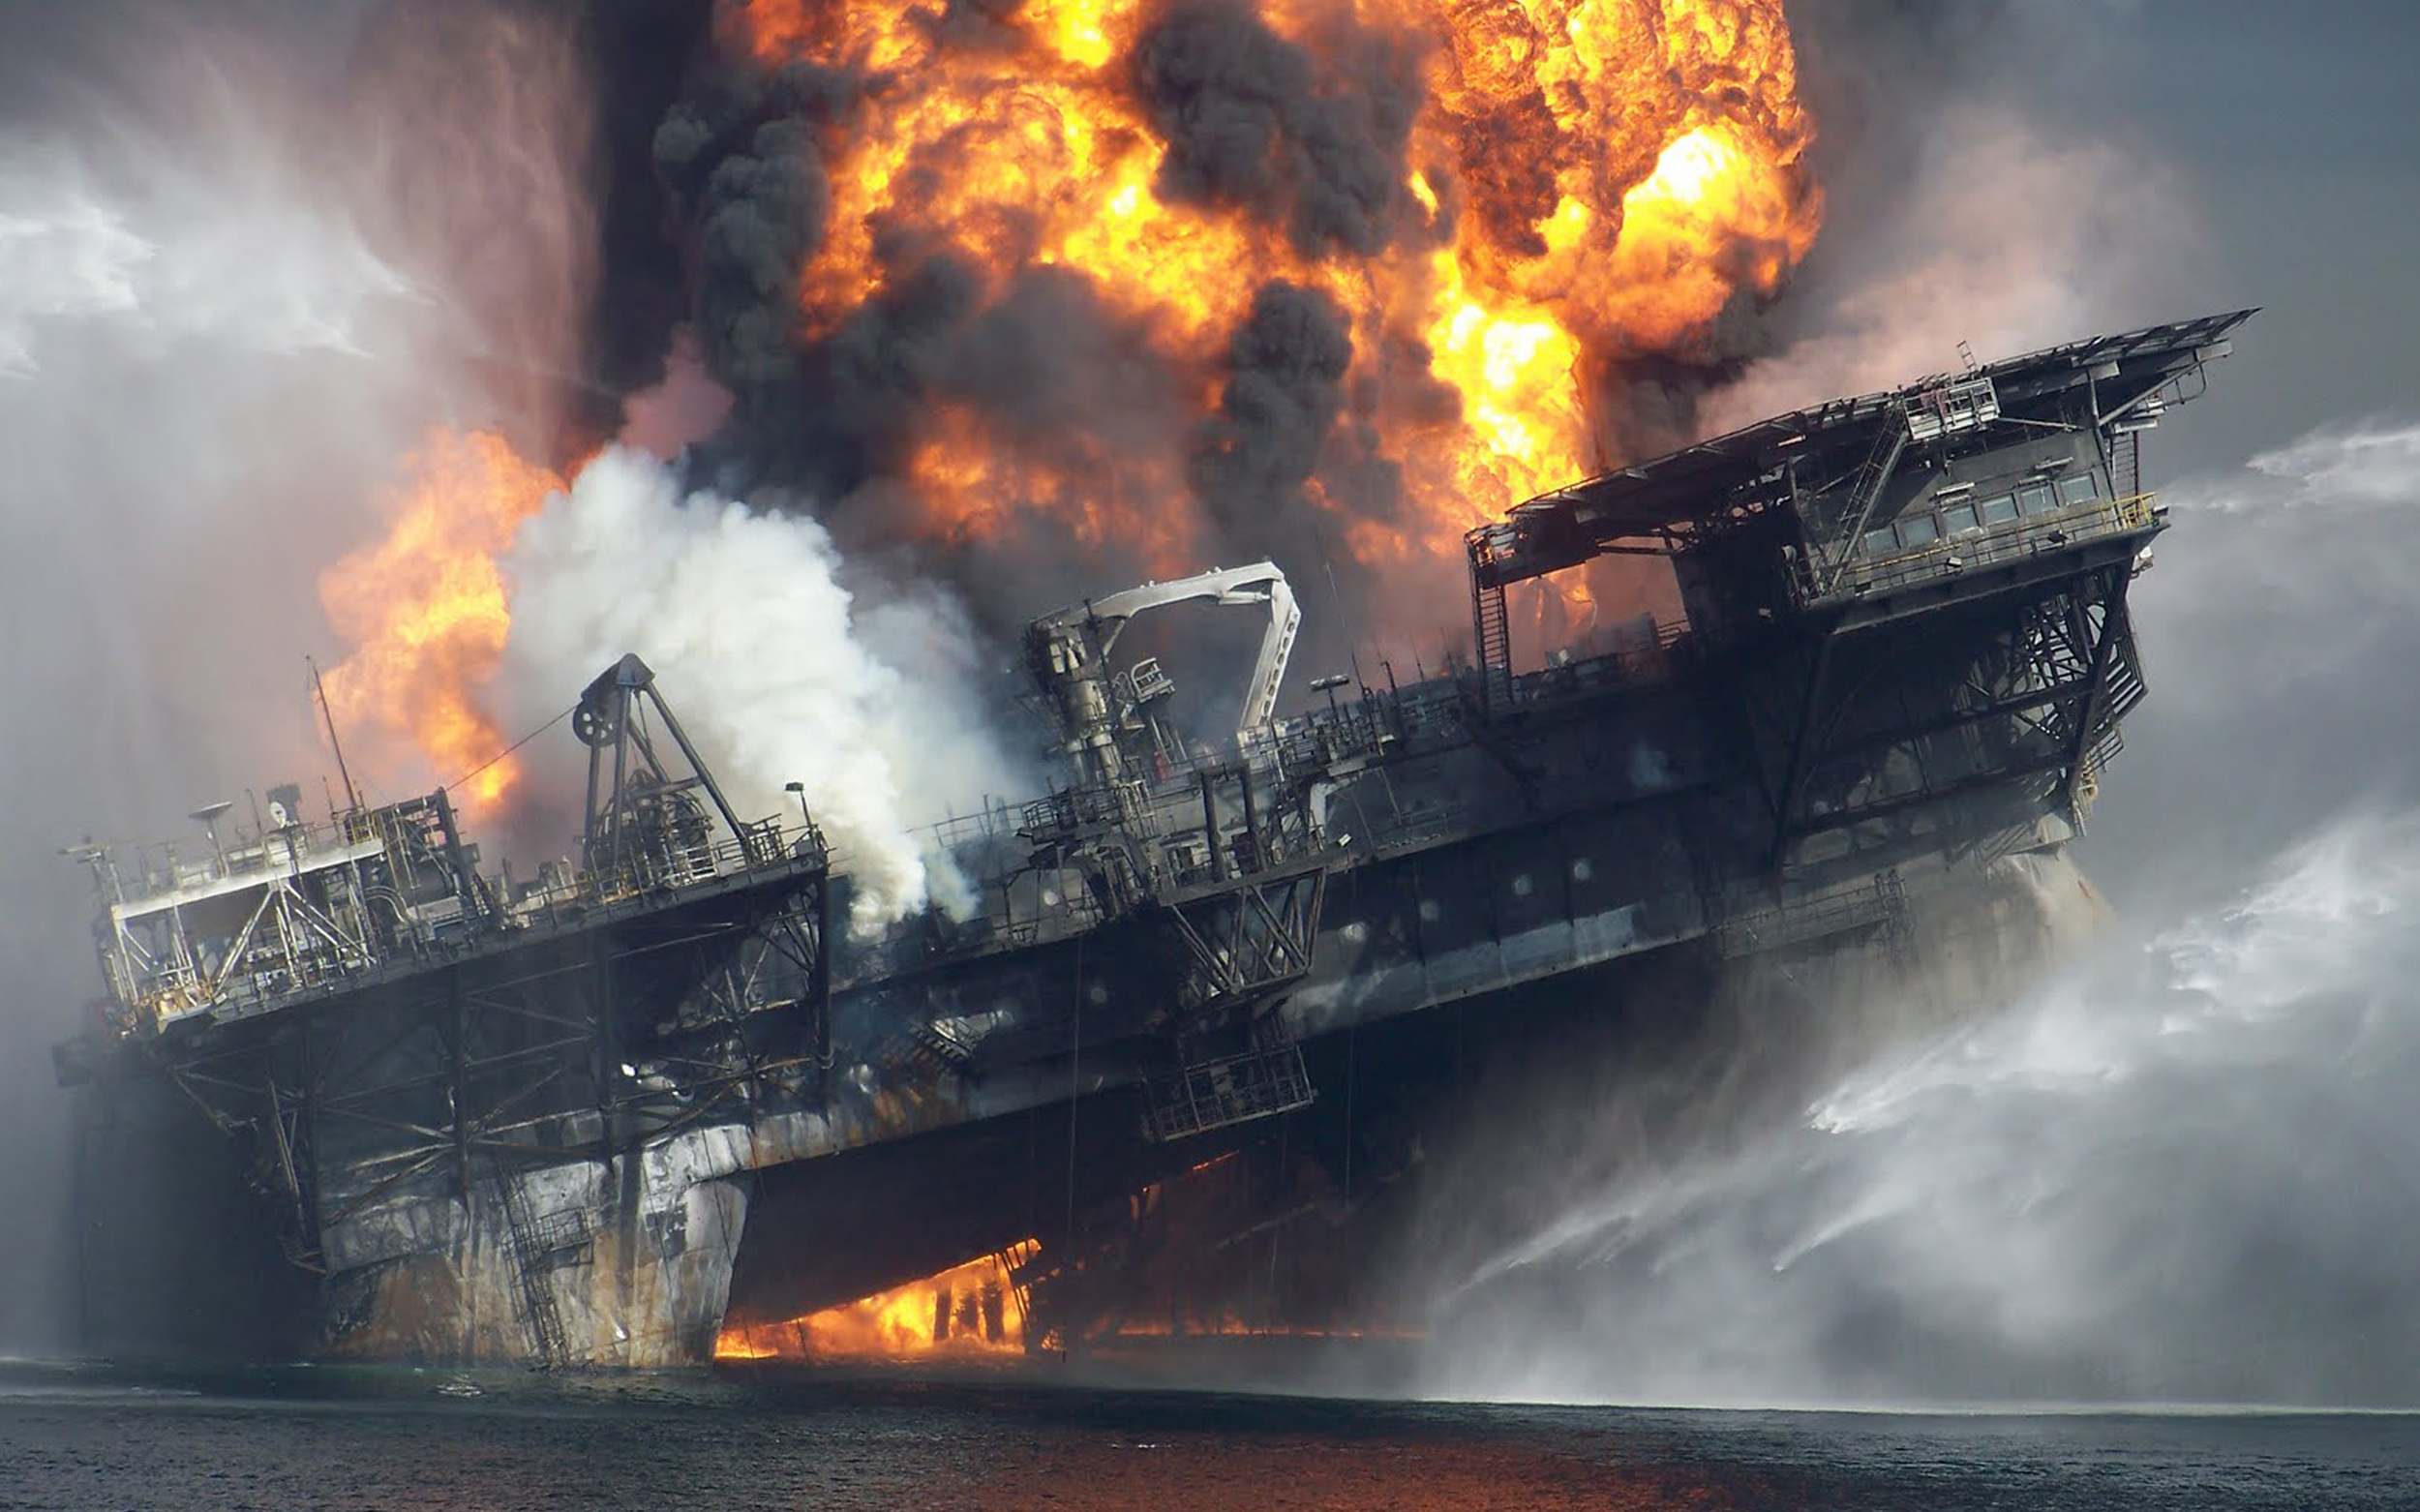 Аварии взрывы катастрофы. Взрыв нефтяной платформы Deepwater Horizon. Взрыв нефтяной платформы Deepwater Horizon - 20 апреля 2010 года. Взрыв нефтяной платформы Deepwater Horizon последствия. Авария на буровой платформе в мексиканском заливе 2010.